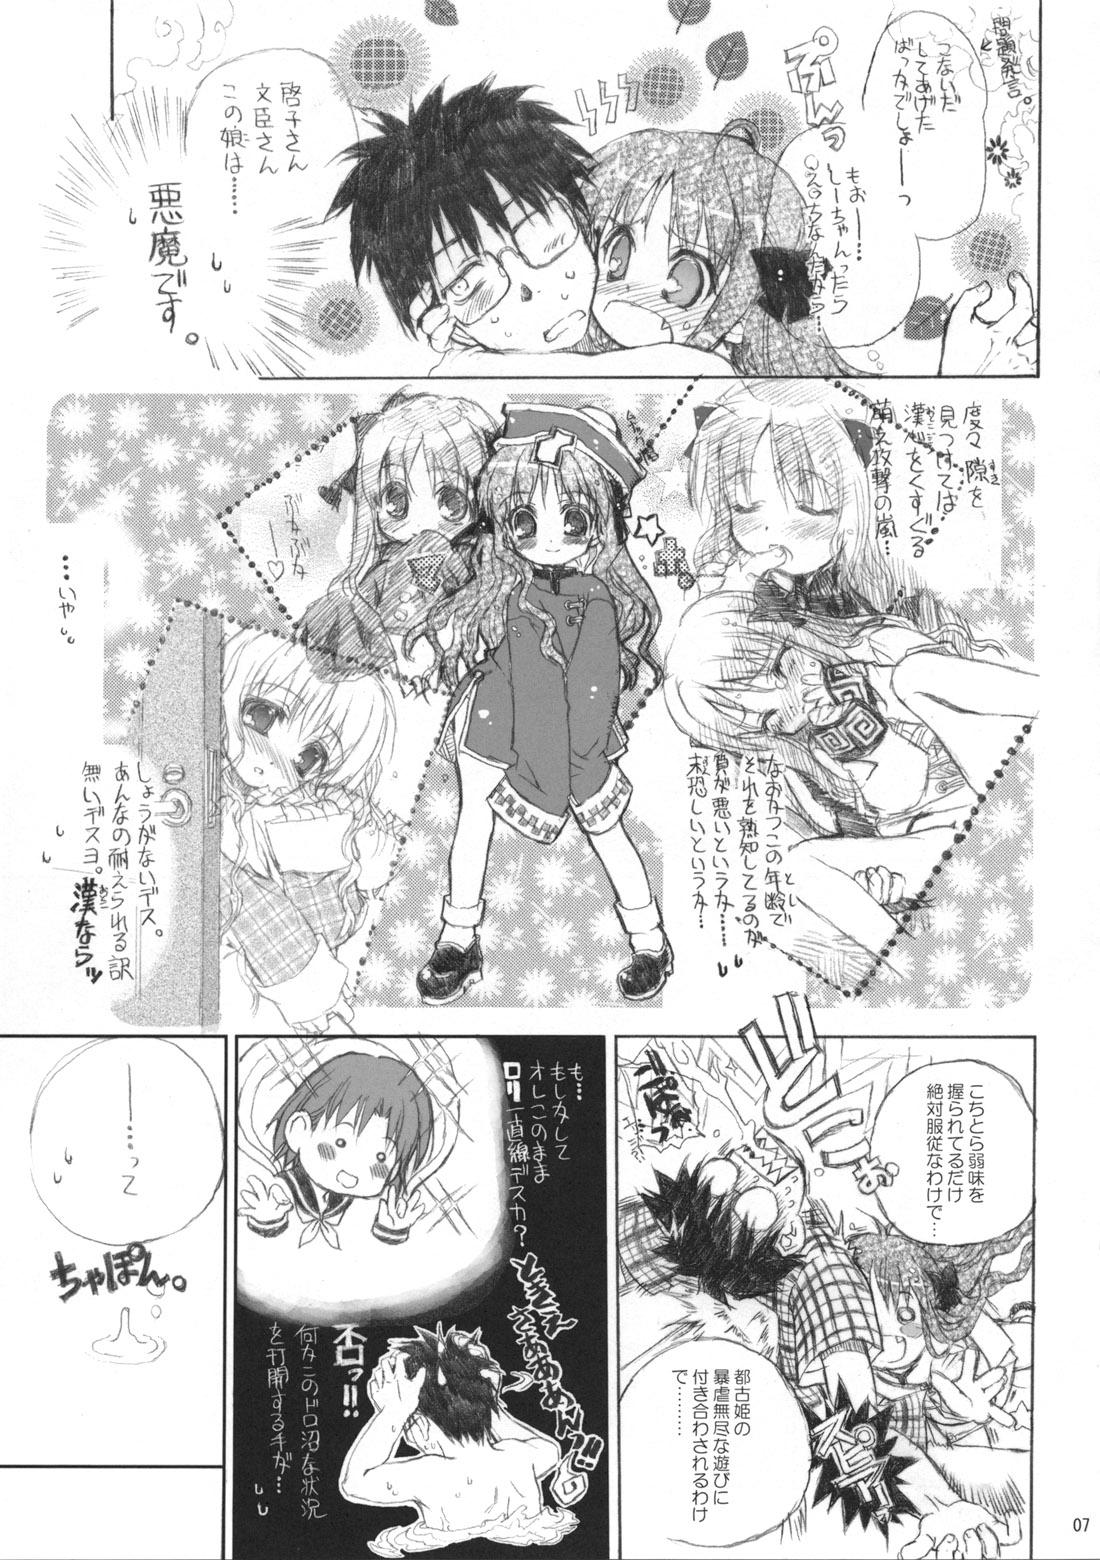 Men Neko-bus Tei no Hon vol.5 - Tsukihime Verga - Page 7